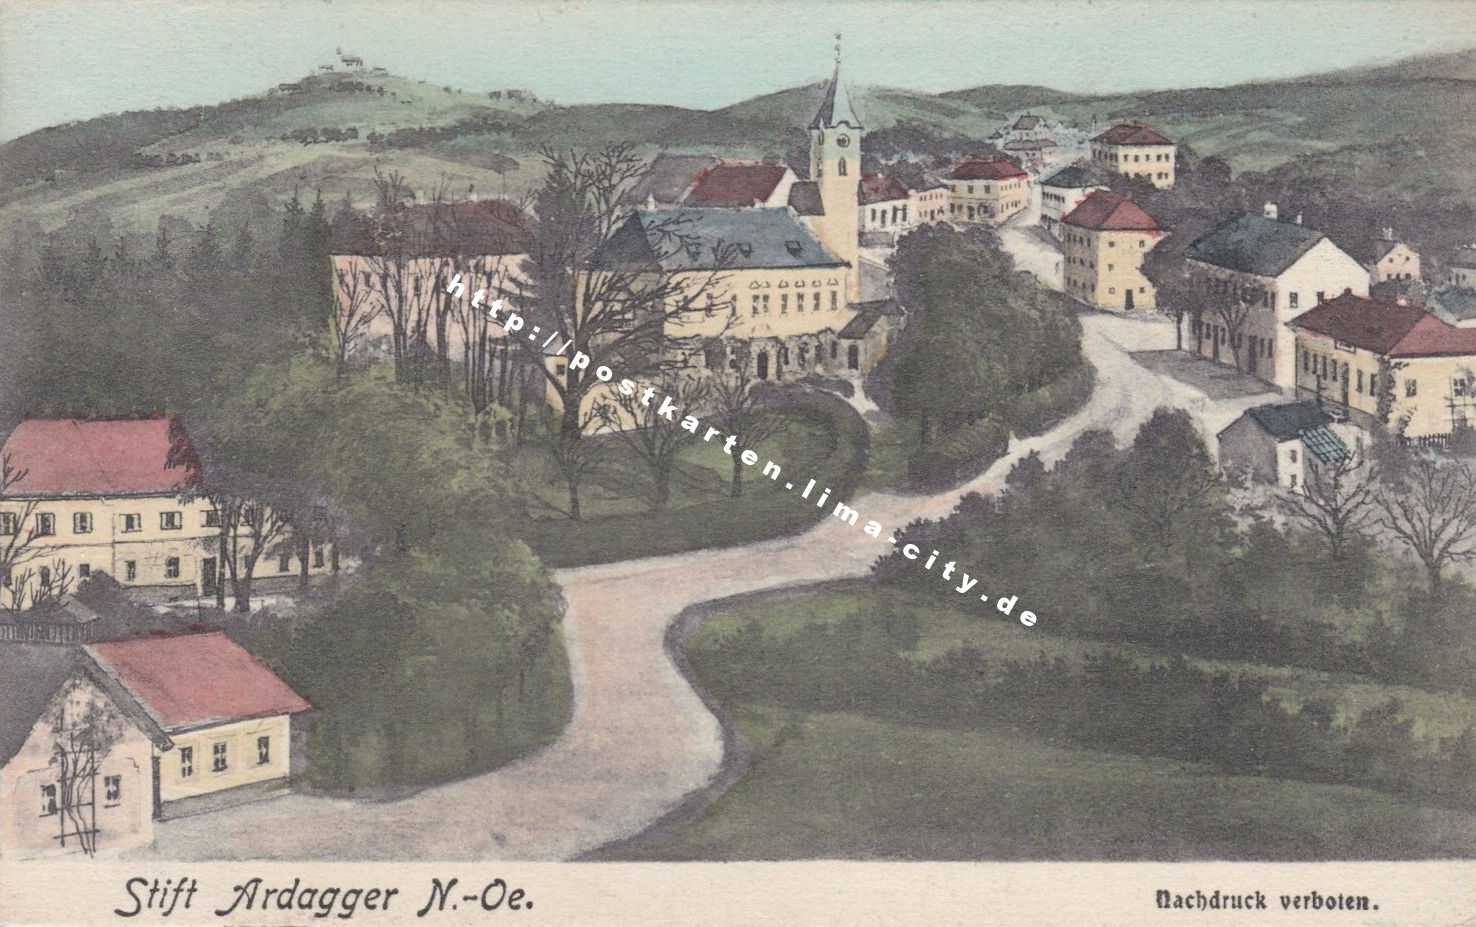 Stift Ardagger 1917